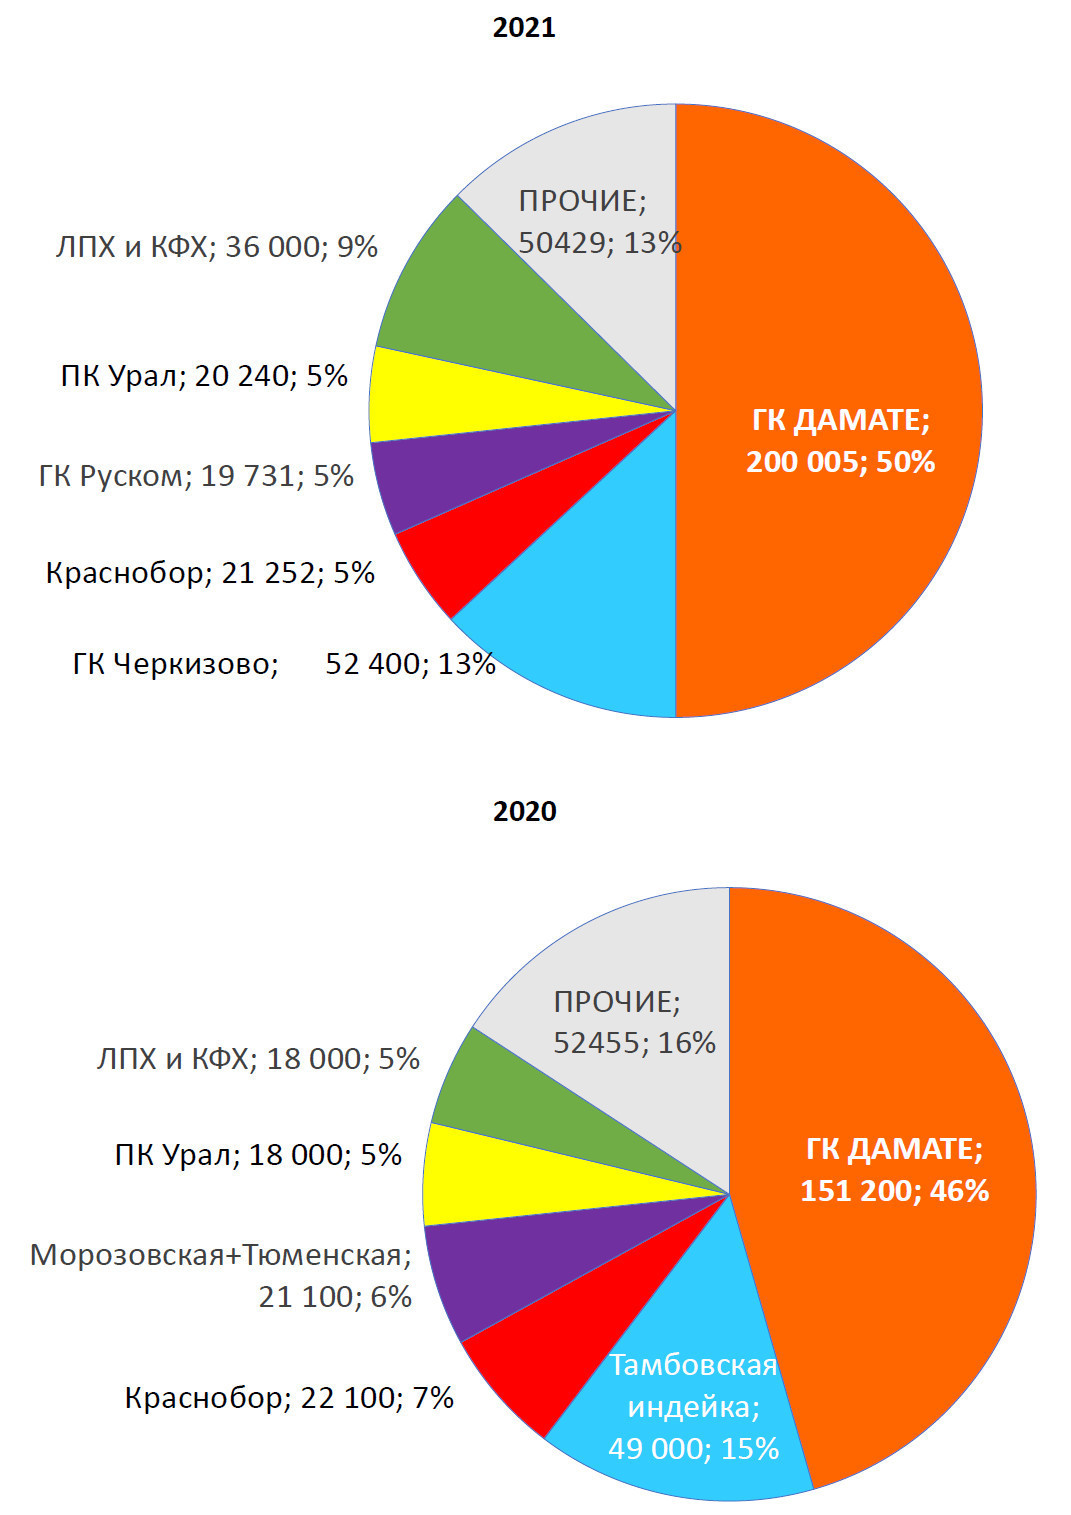 <b><span>Топ-5 производителей
индейки в российской федерации,объем производства в убойном весе (тонн), доля
(проценты)</span></b>